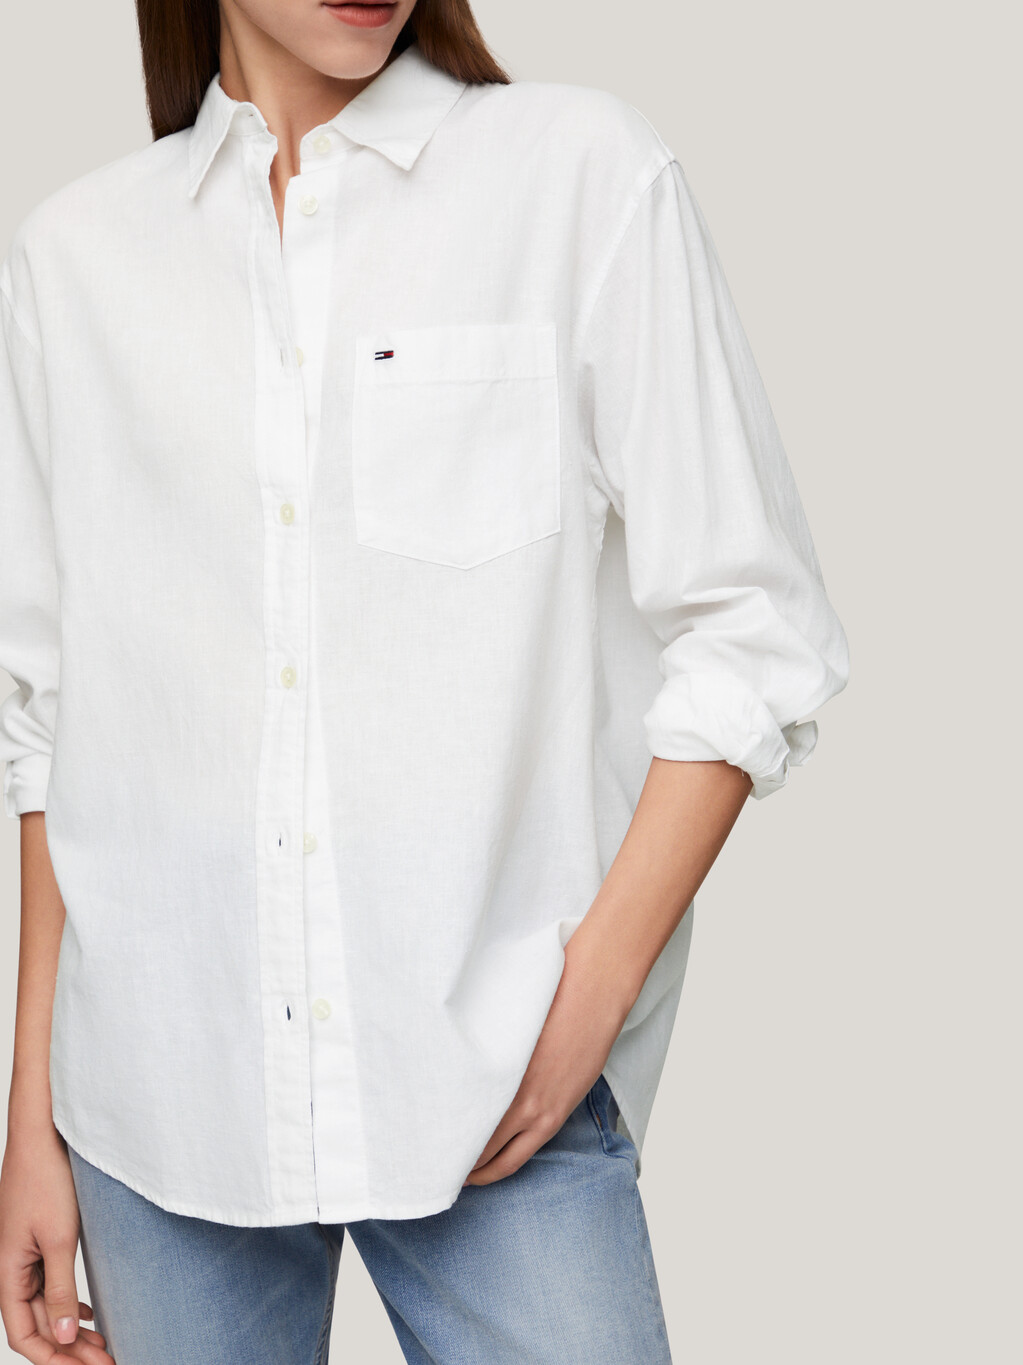 Collared Patch Pocket Boyfriend Shirt, White, hi-res